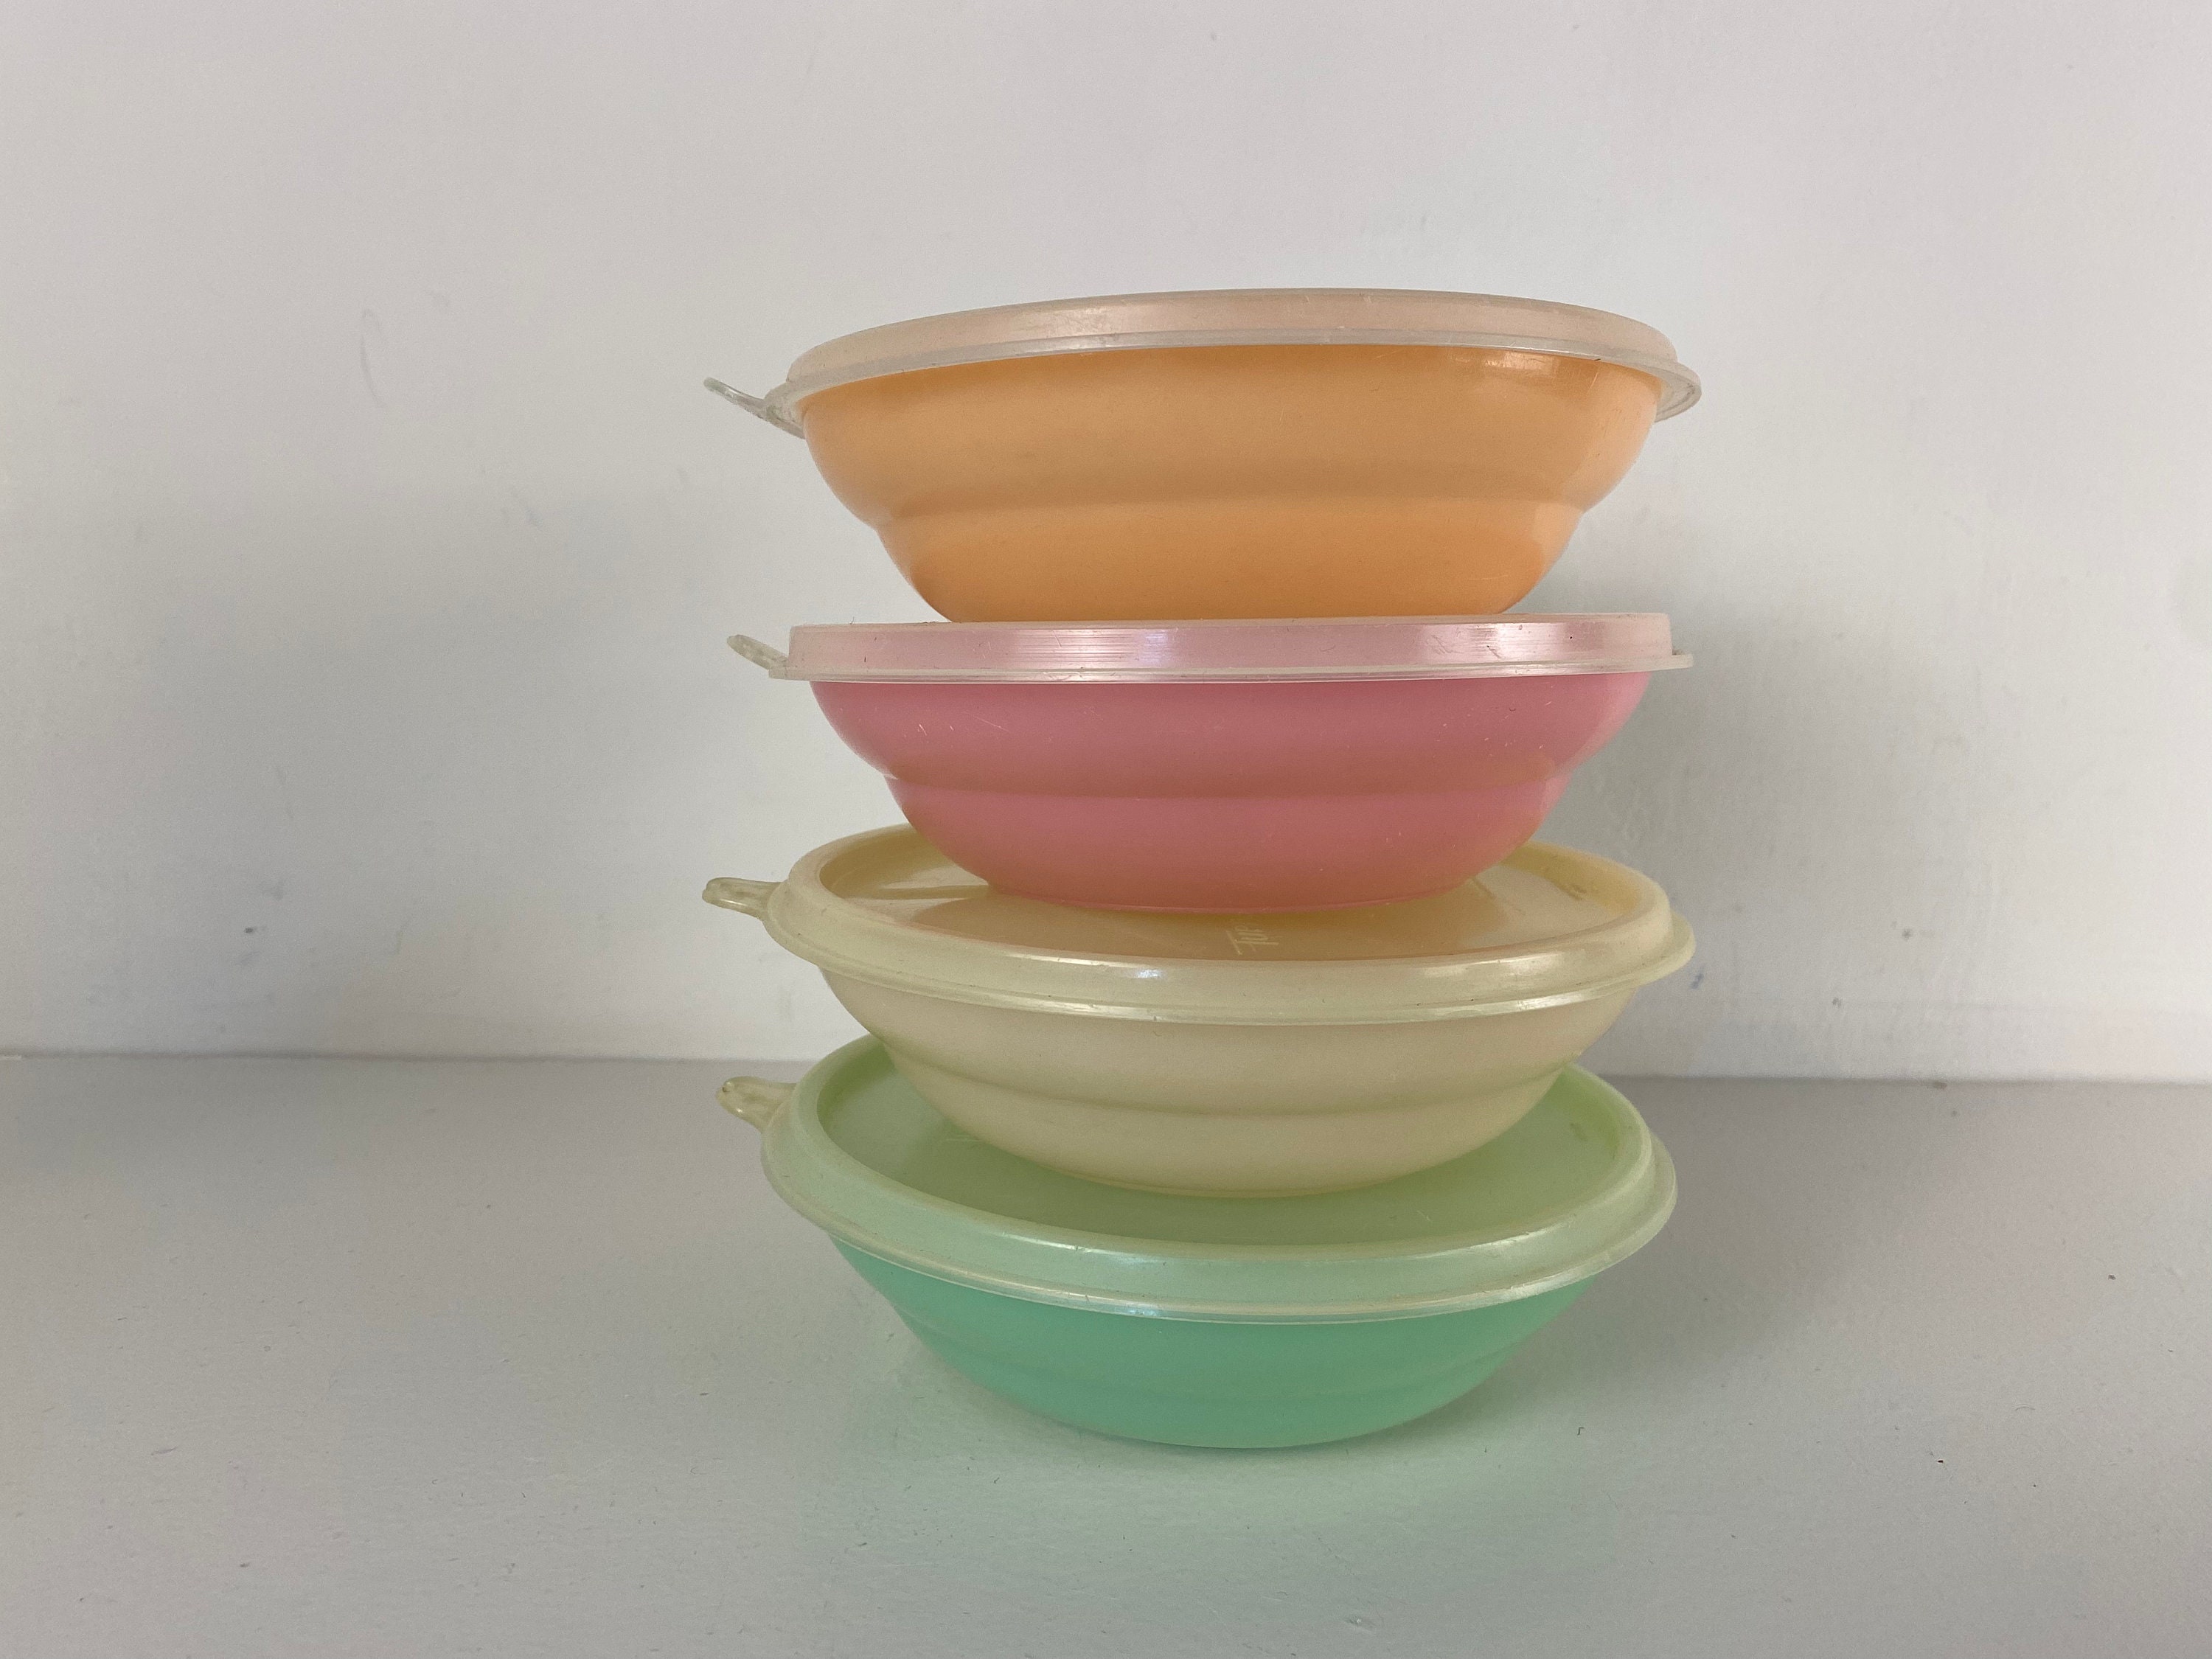 påske Belyse Ledningsevne 4 Tupperware bowls with lids pastel shades from the 1970s